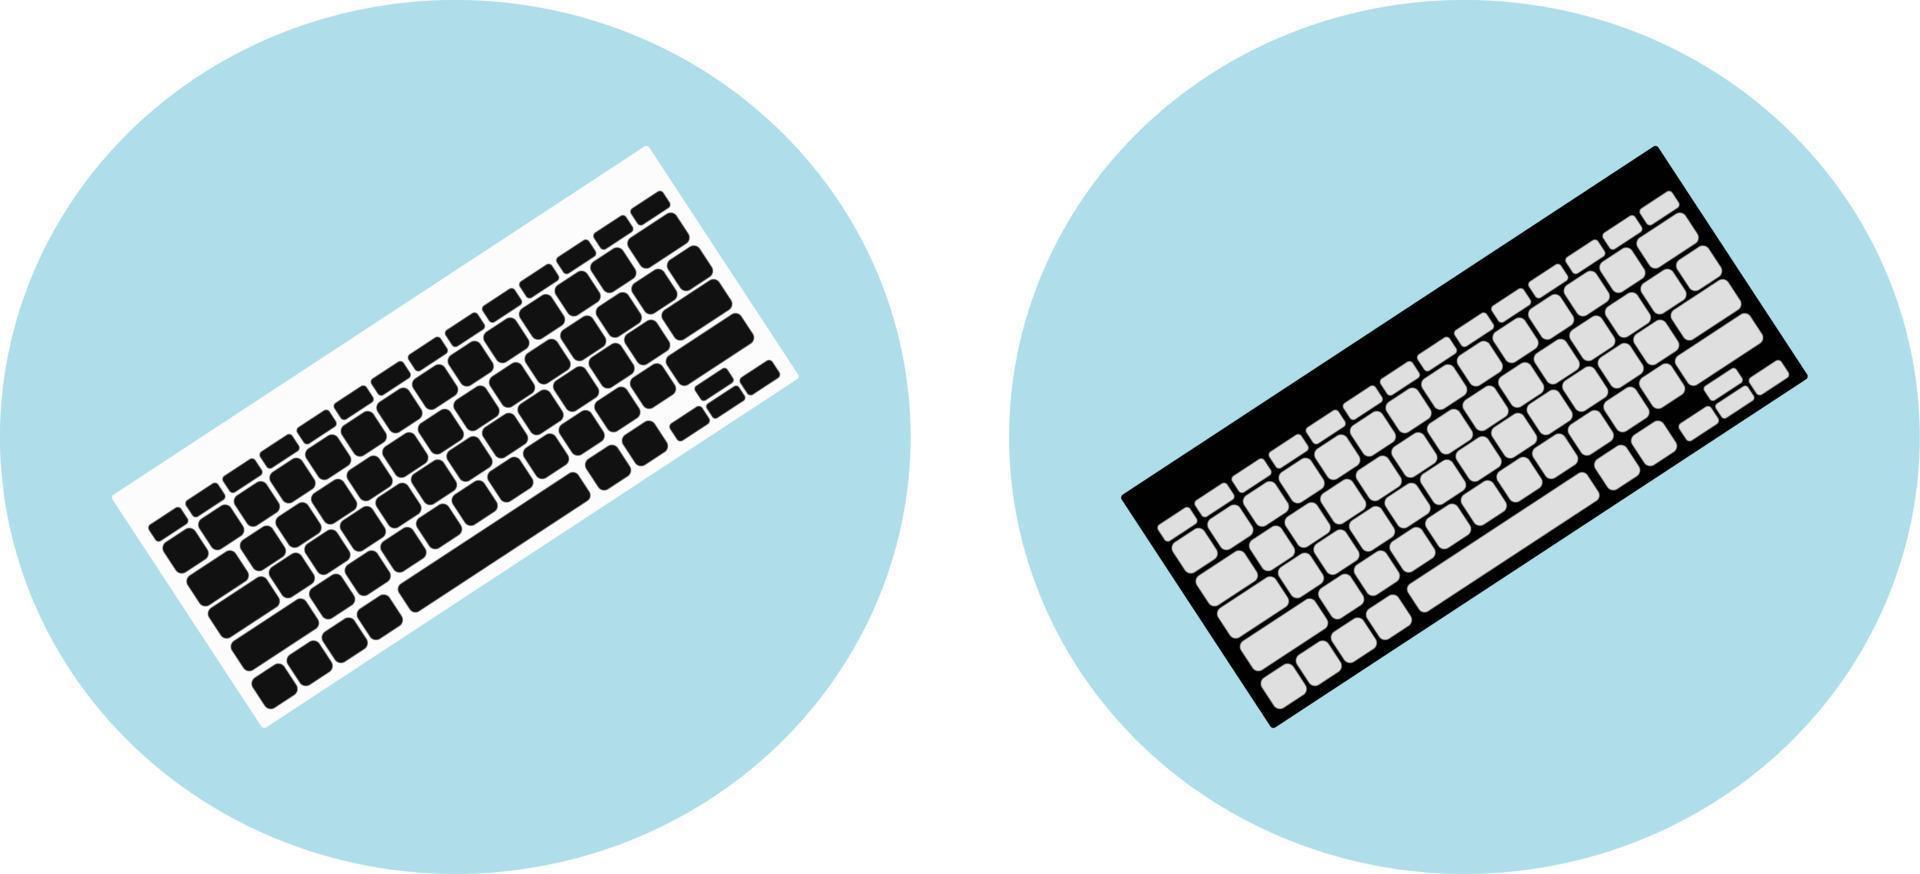 ronde toetsenbordpictogram. zwart-wit toetsenbord op een blauwe achtergrond. vectorillustratie in platte cartoonstijl vector